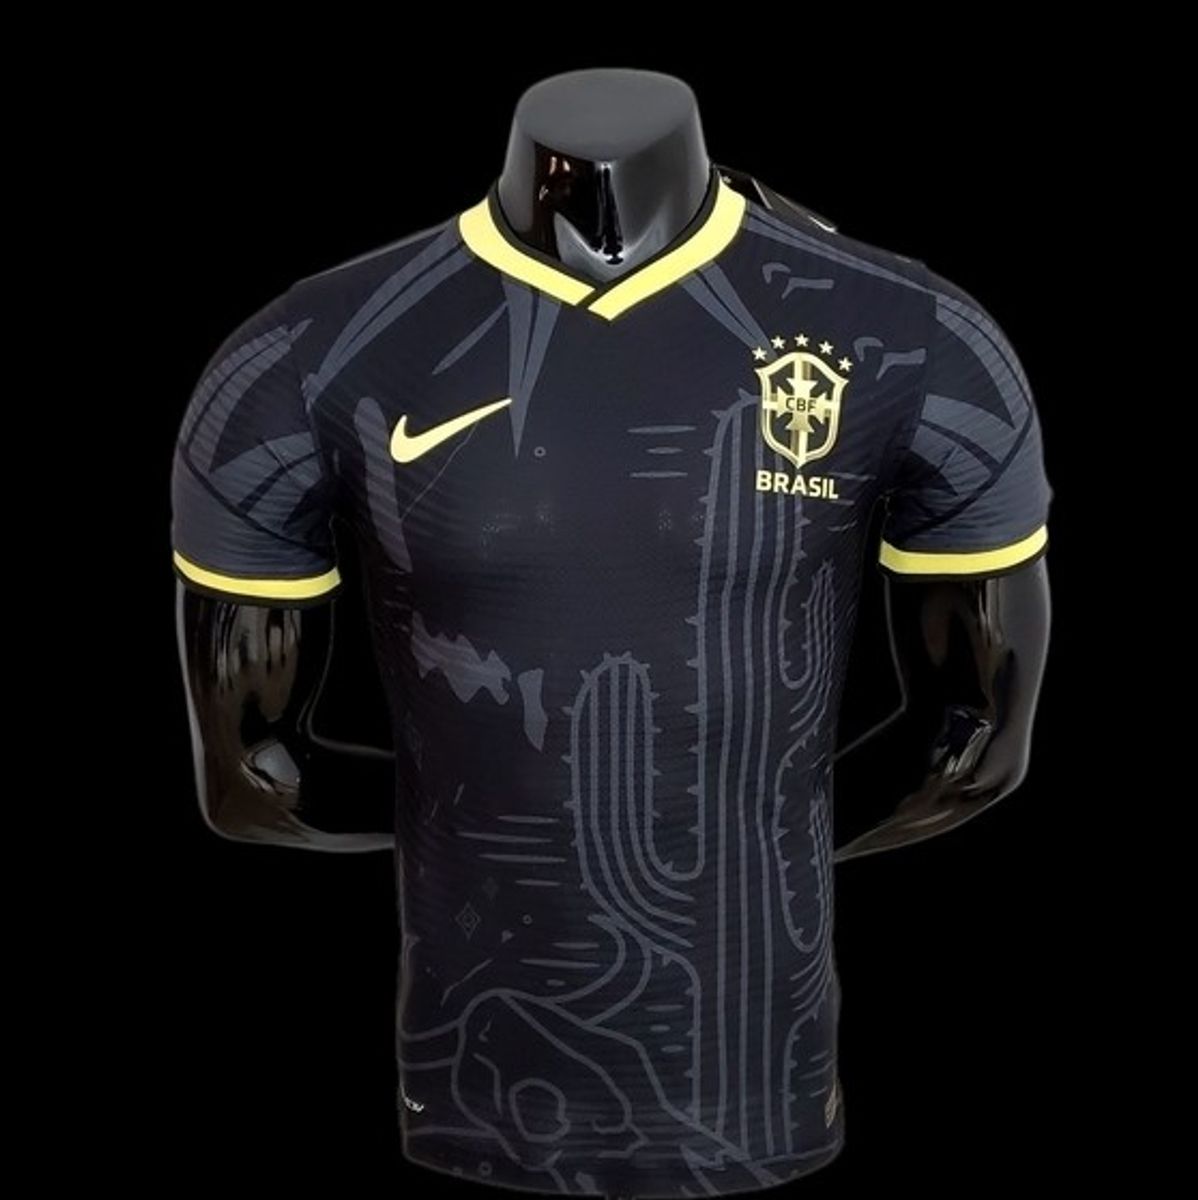 Camisa Seleção Brasileira Edição Especial - Masculina Torcedor - Preta e  Dourado